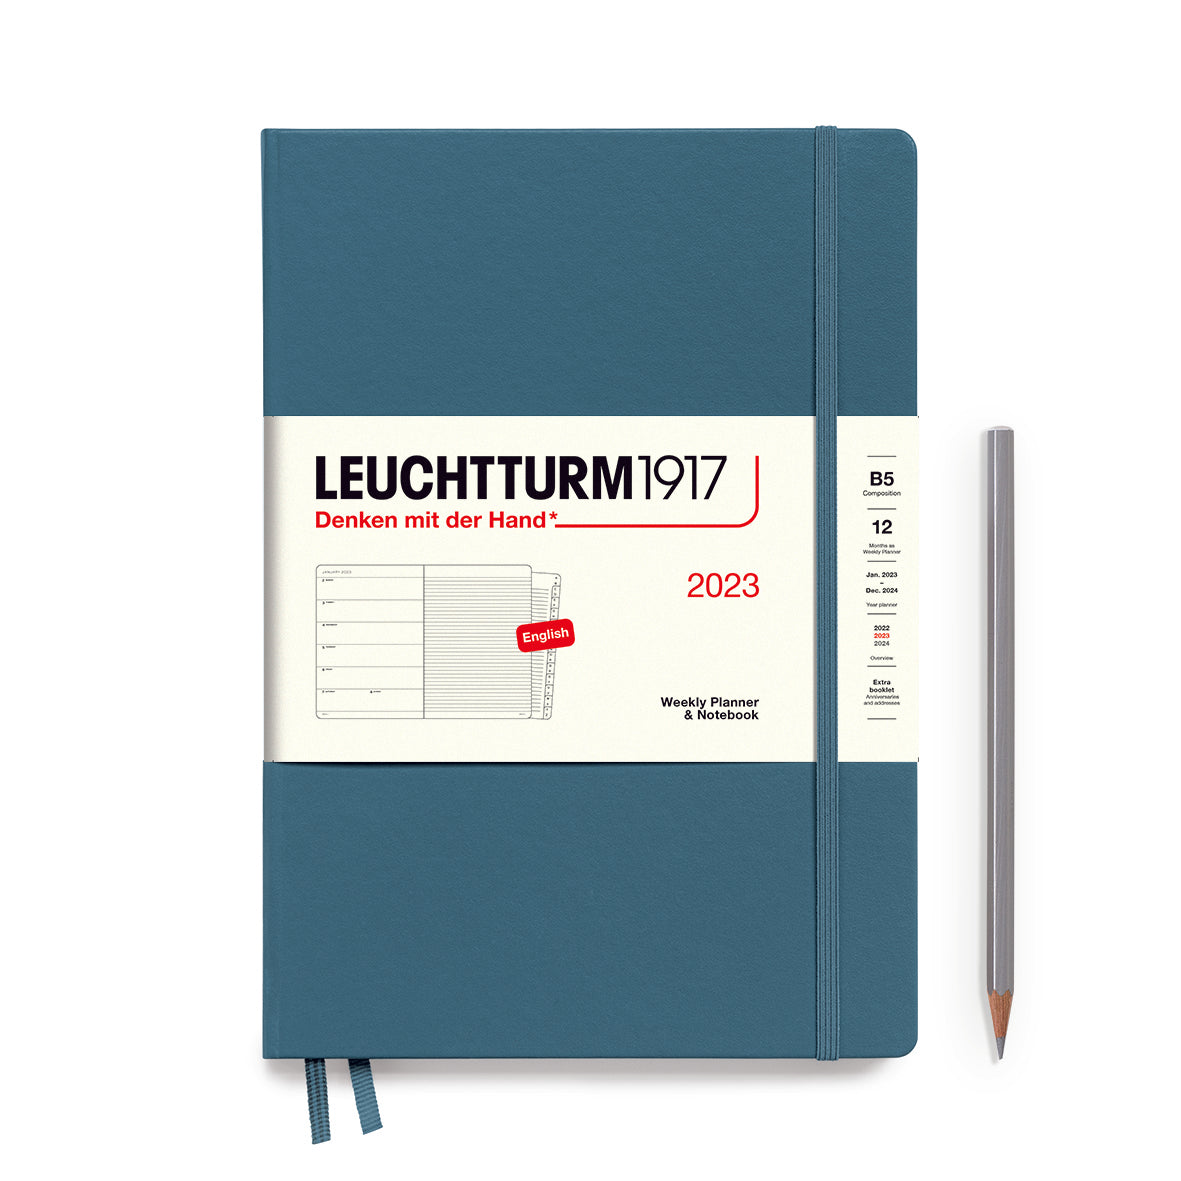 Leuchtturm1917 Weekly Planner & Notebook